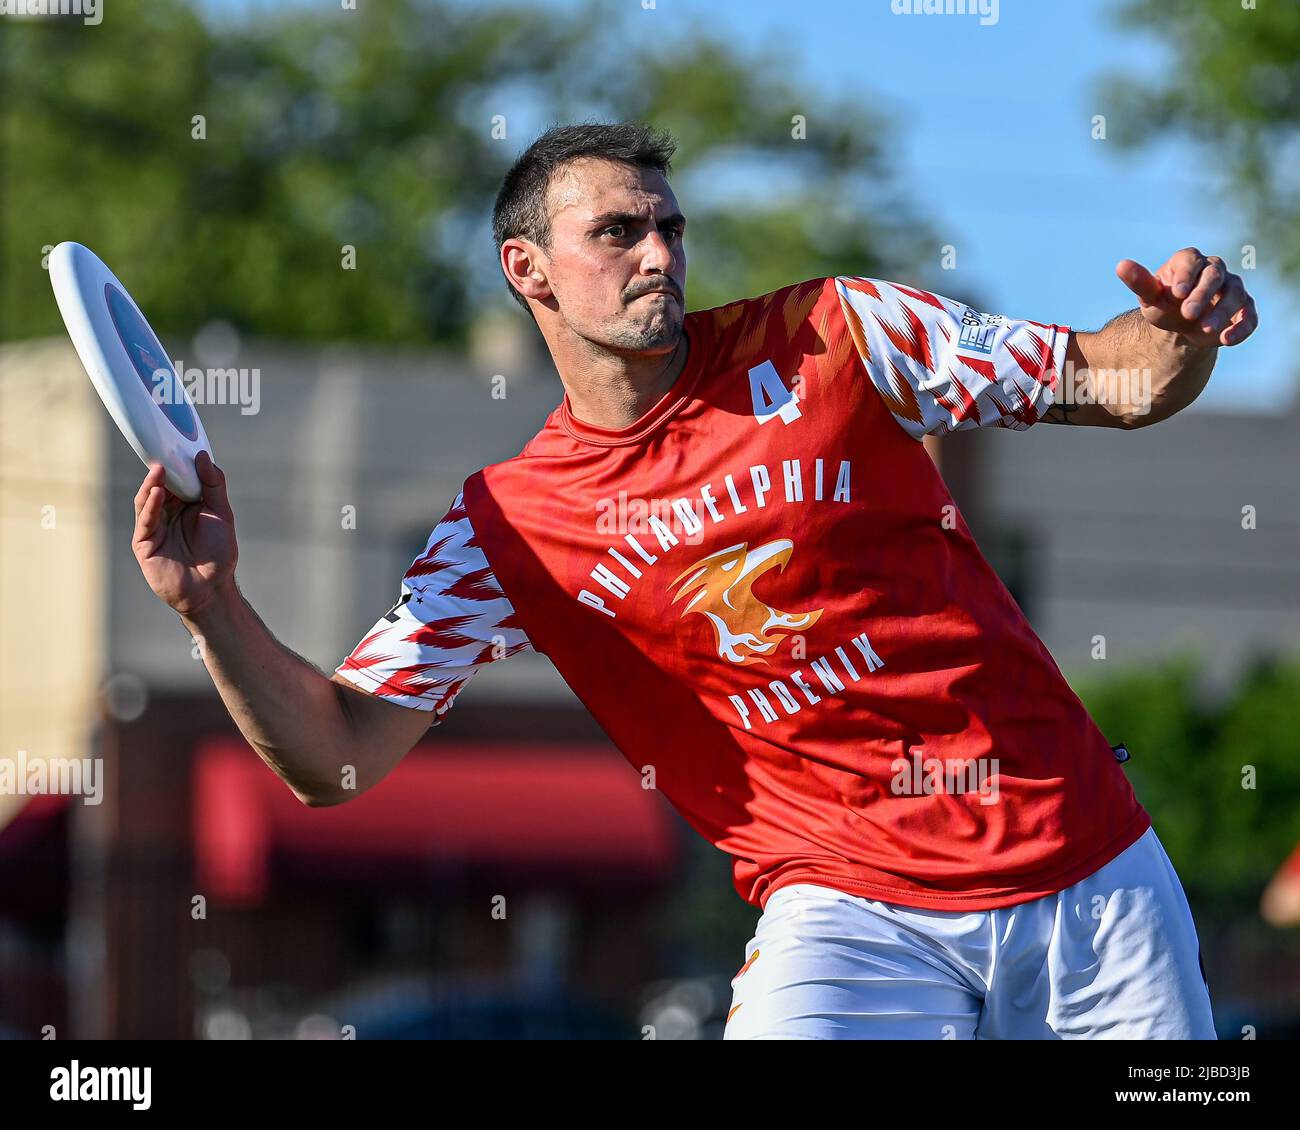 Ultimate frisbee competition match - AUDL PROFESSIONAL PLAYERS lanza /  lanza el disco durante un juego de Philadelphia Phoenix USA / Estados  Unidos / US Fotografía de stock - Alamy